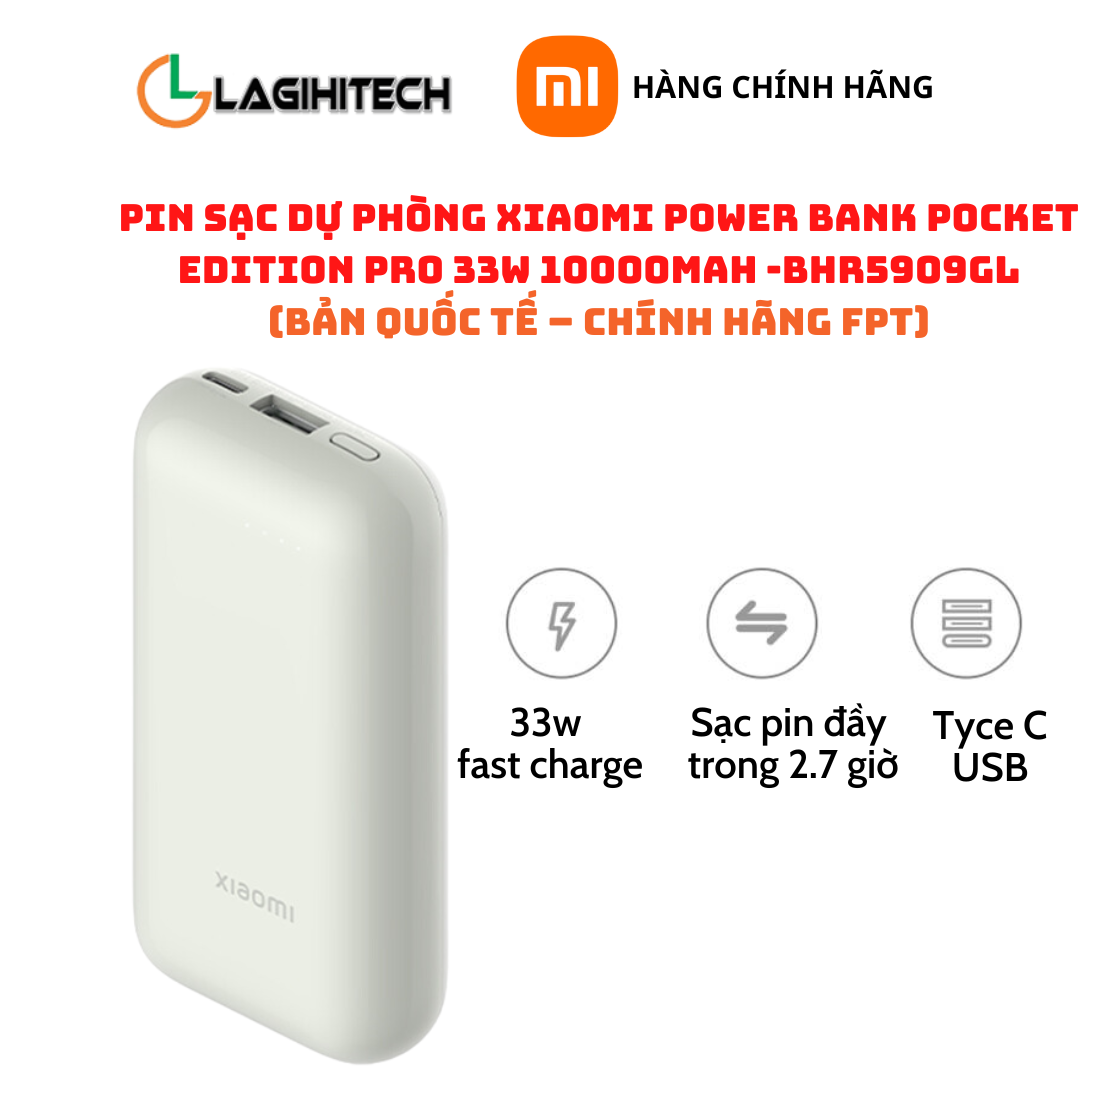 Pin Sạc Dự Phòng Xiaomi Power Bank Pocket Edition Pro 33W 10000mAh / 22.5W 10000mAh Bản Quốc Tế – Hàng Chính Hãng FPT